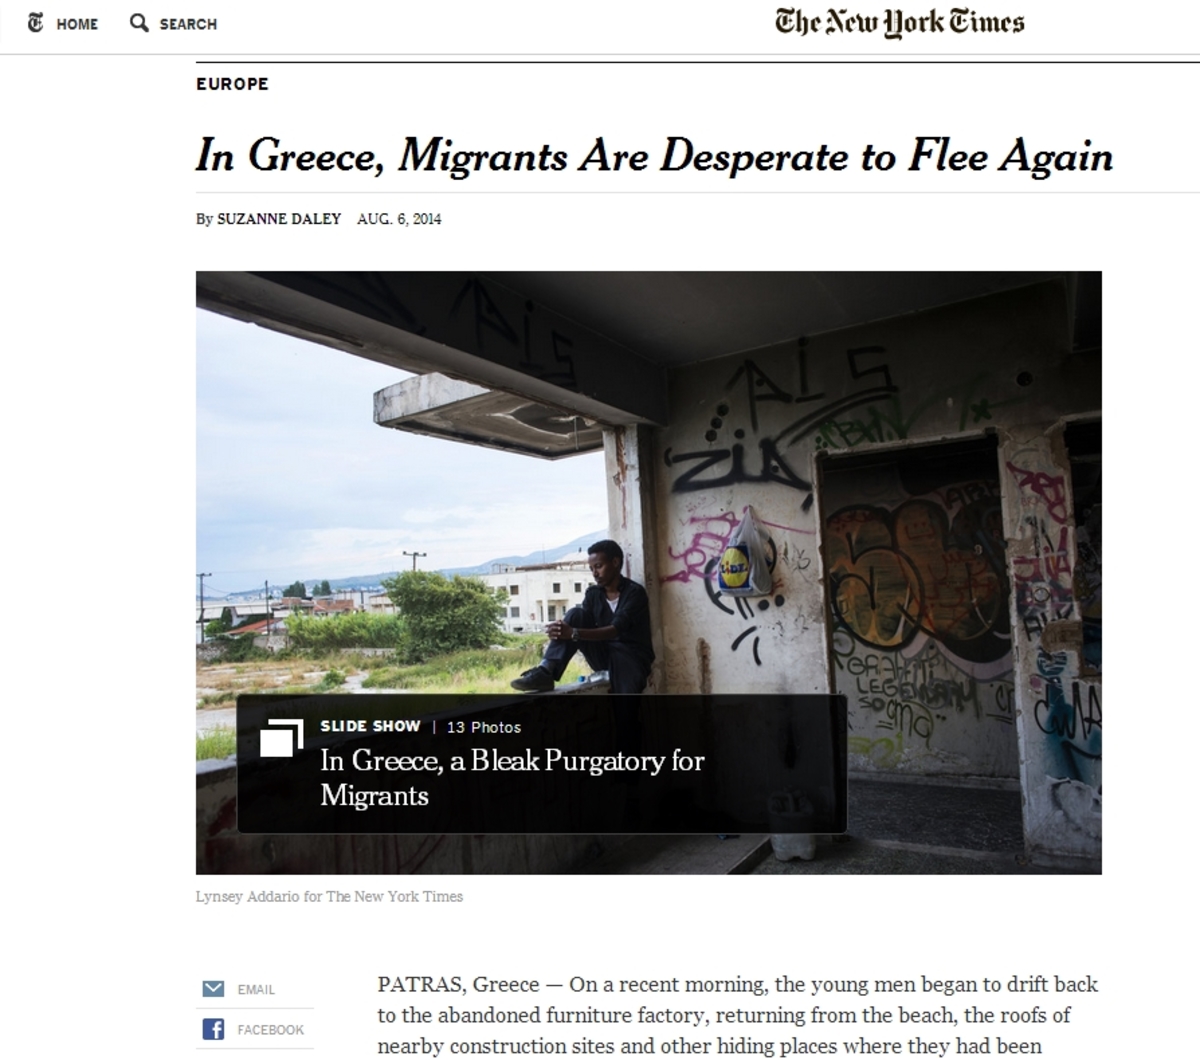 Οι New York Times για τους παράνομους μετανάστες στην Πάτρα – “Υπερβολικά εχθρικοί οι Έλληνες”, αναφέρει το δημοσίευμα